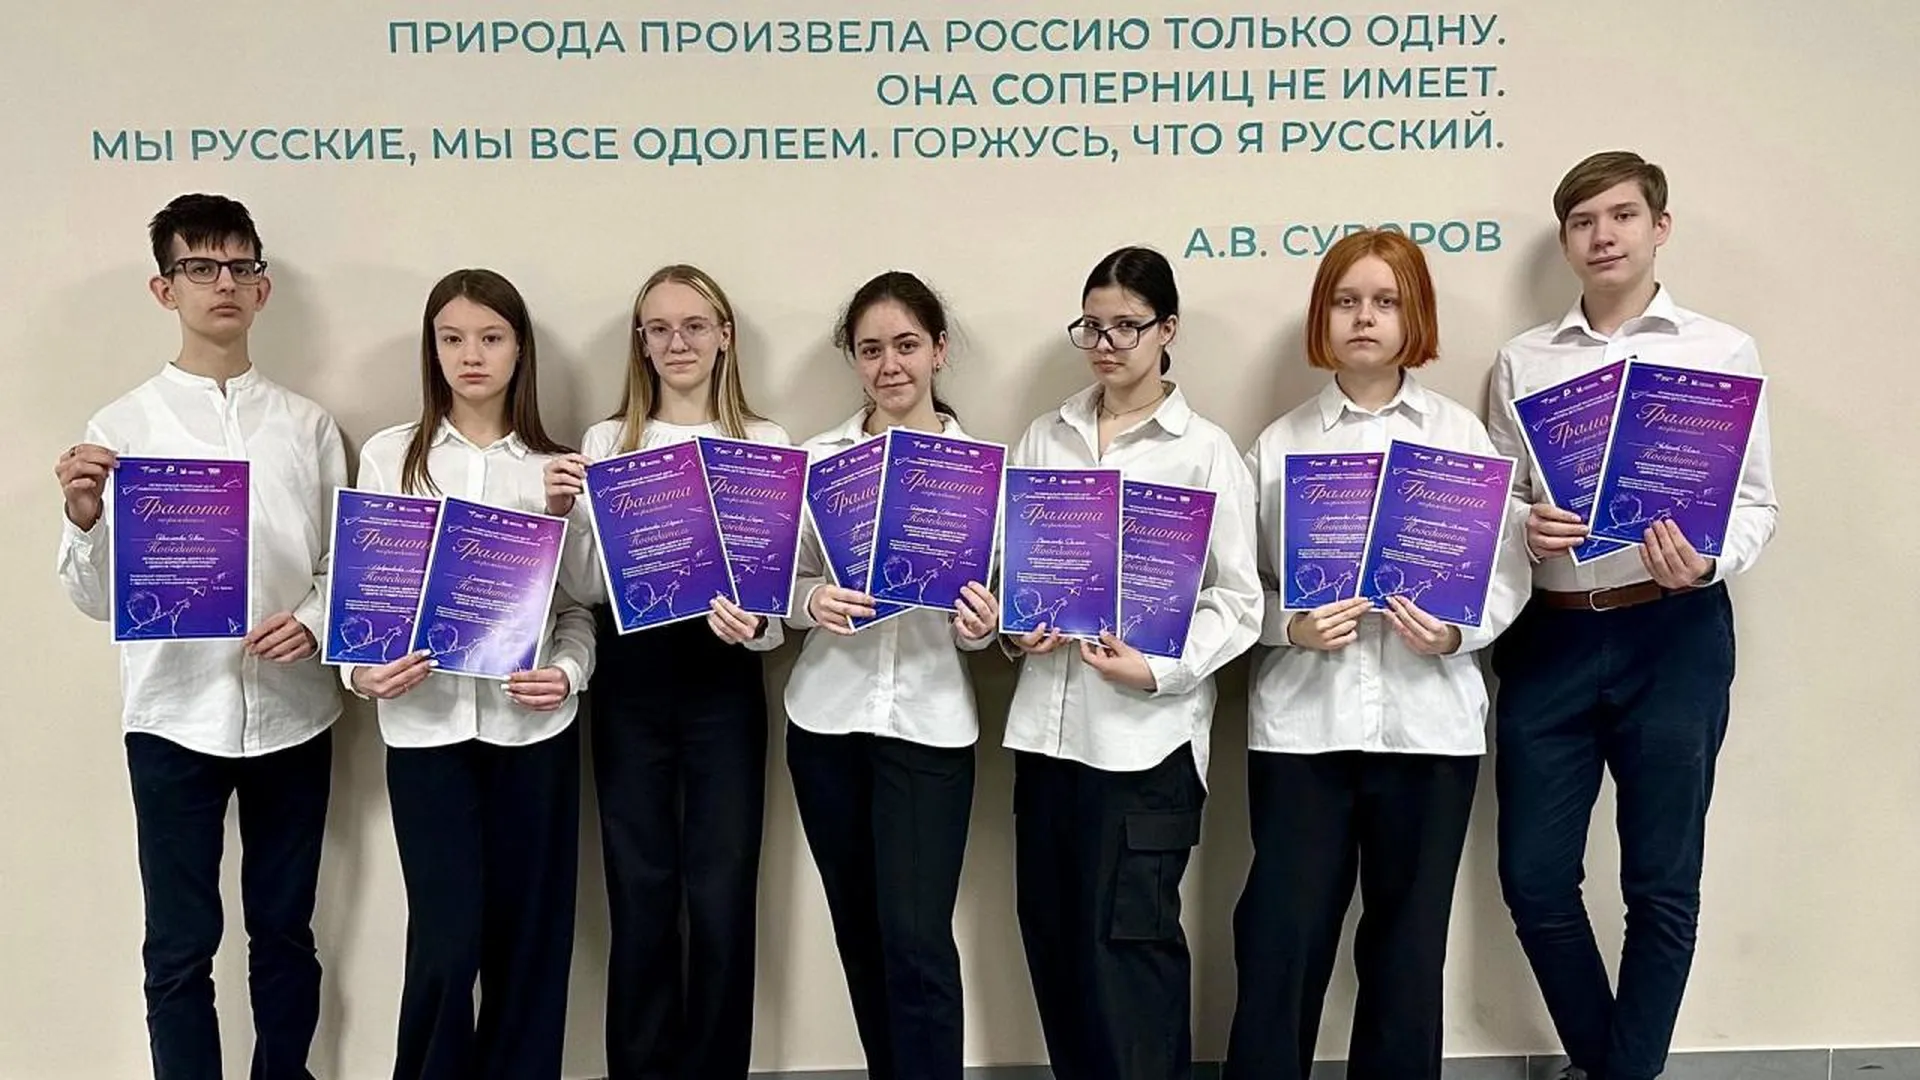 Награждение участников региональной акции «Добро в люди» состоялось в Подмосковье